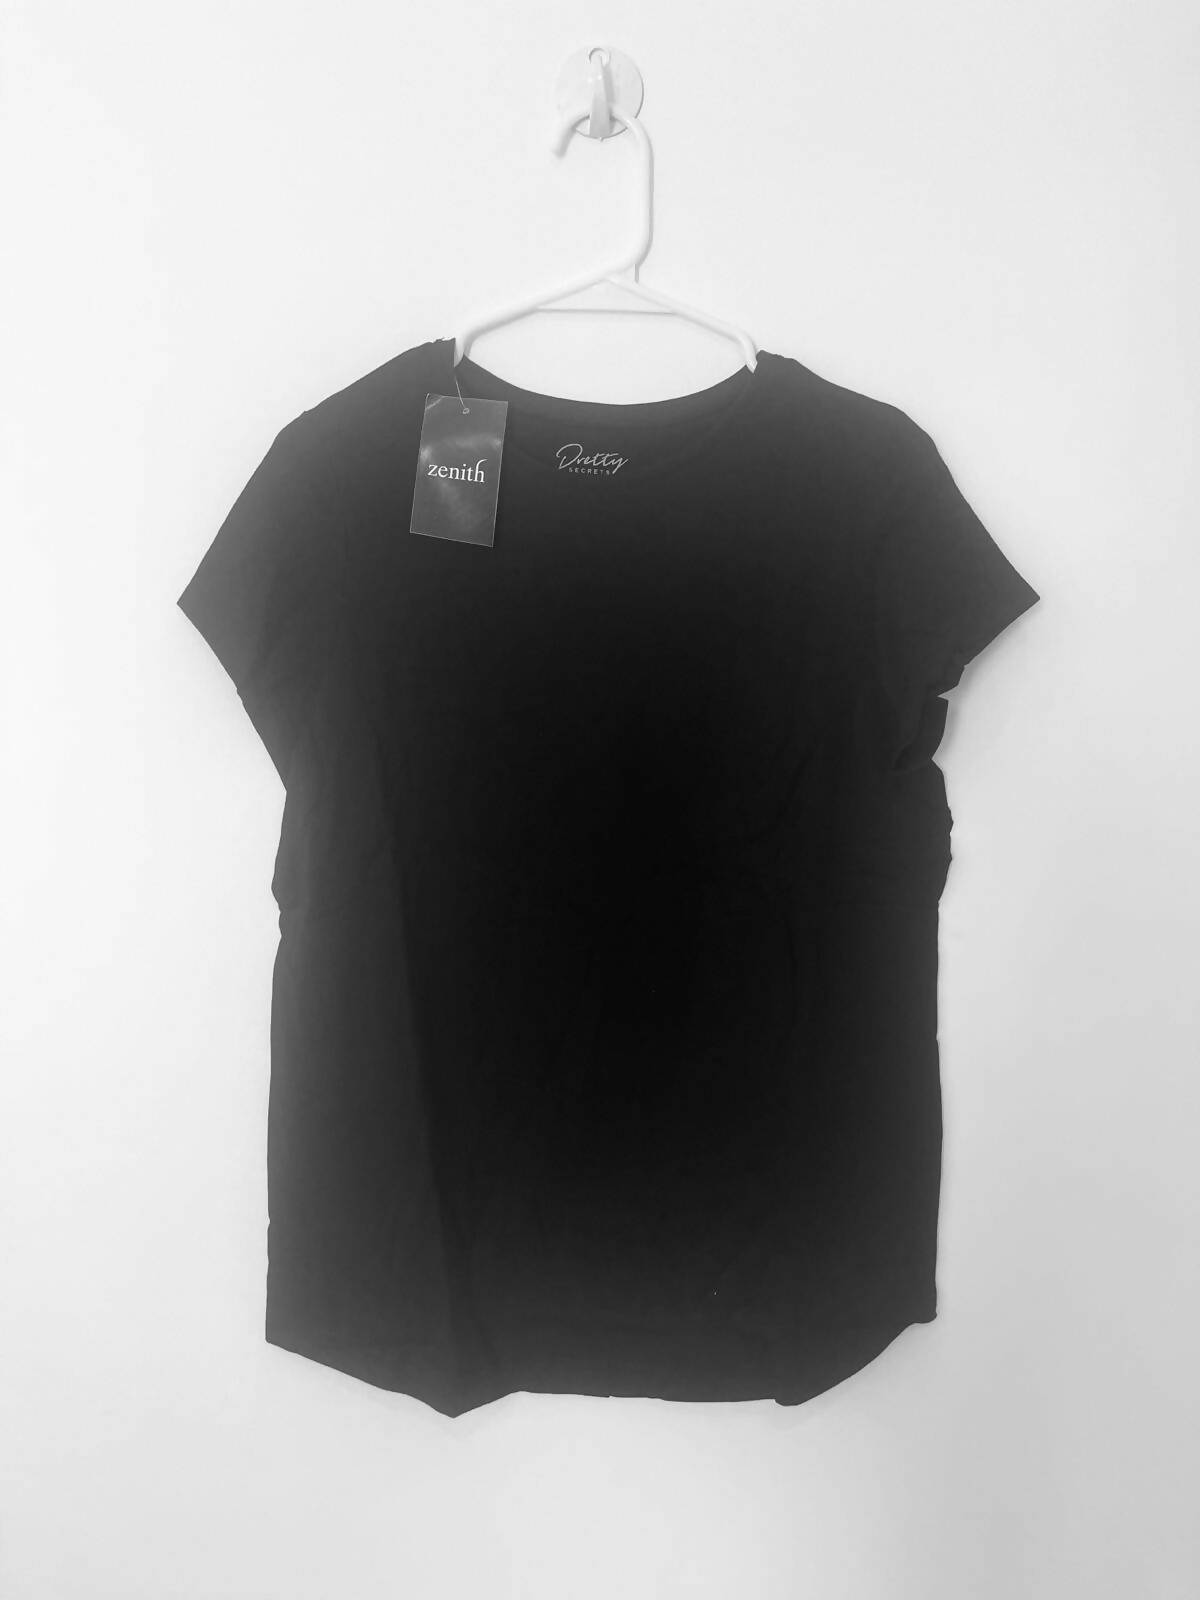 Zenith | Black PJ set (Size: Small, 8/10) | Women Loungewear & Sleepwear | Brand New